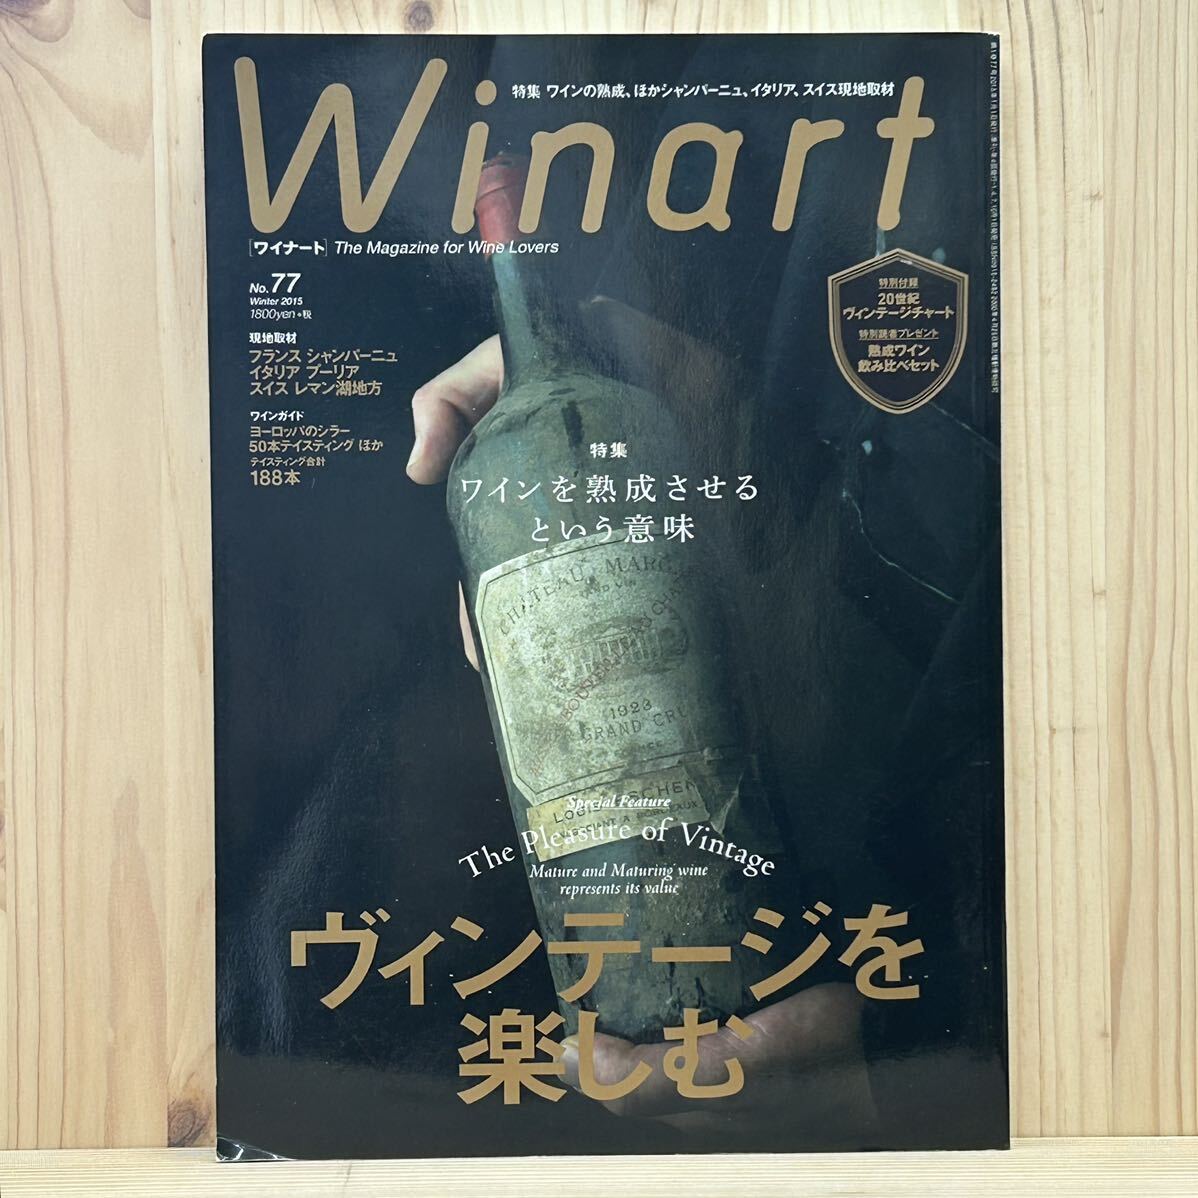 ☆Winart ワイナート 2015年 Winter No.77 ※特別付録無し ヴィンテージを楽しむ/ワインを熟成させるという意味/ワインガイド/現地取材_画像1